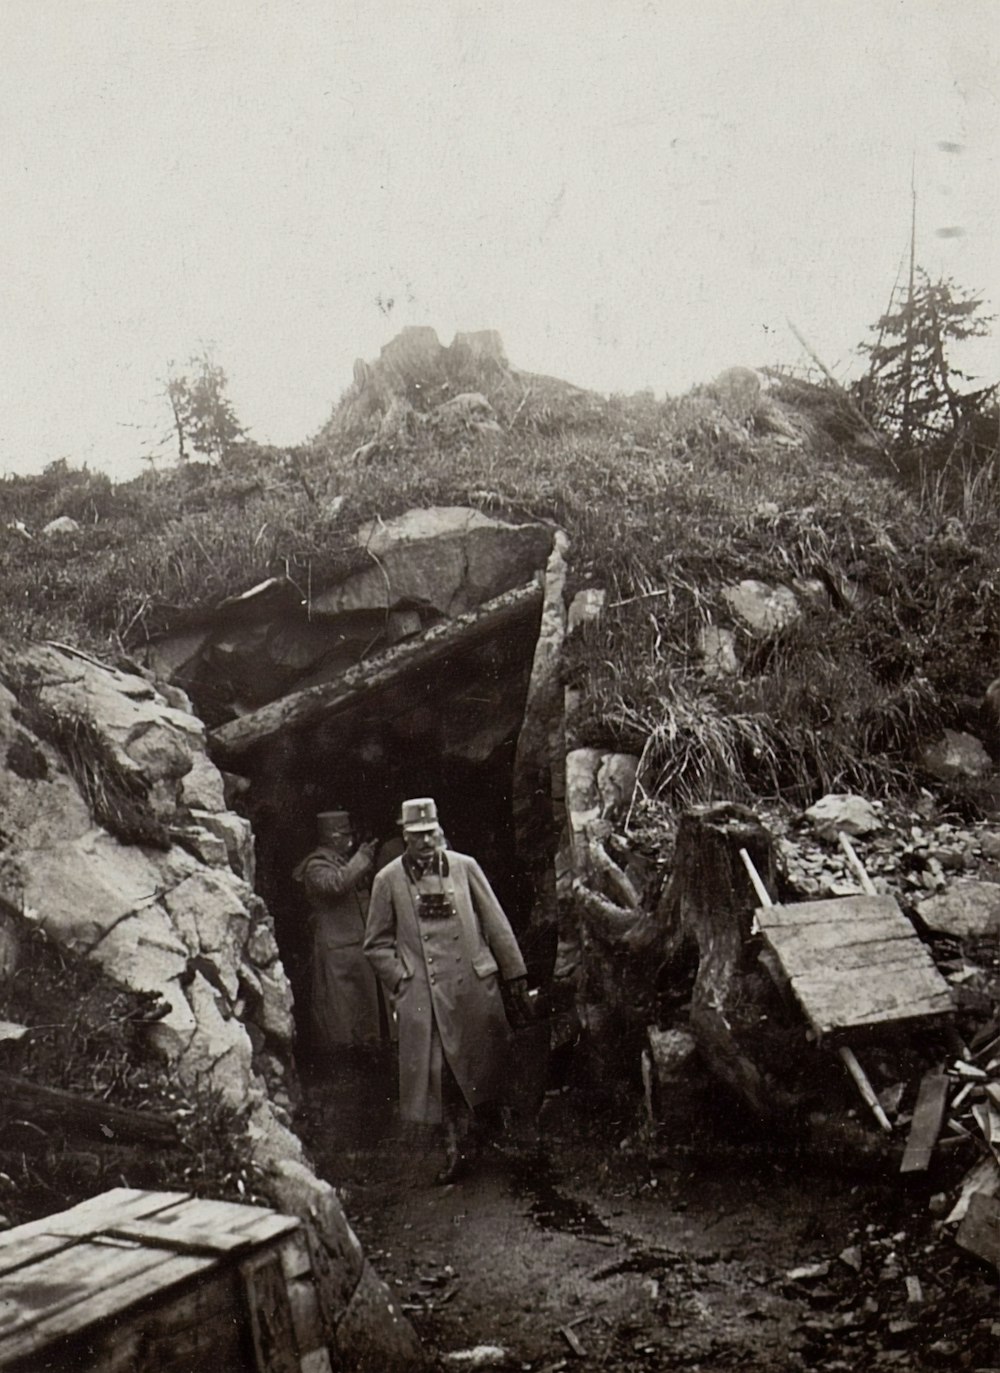 fotografia in scala di grigi di uomini che escono da un tunnel minerario